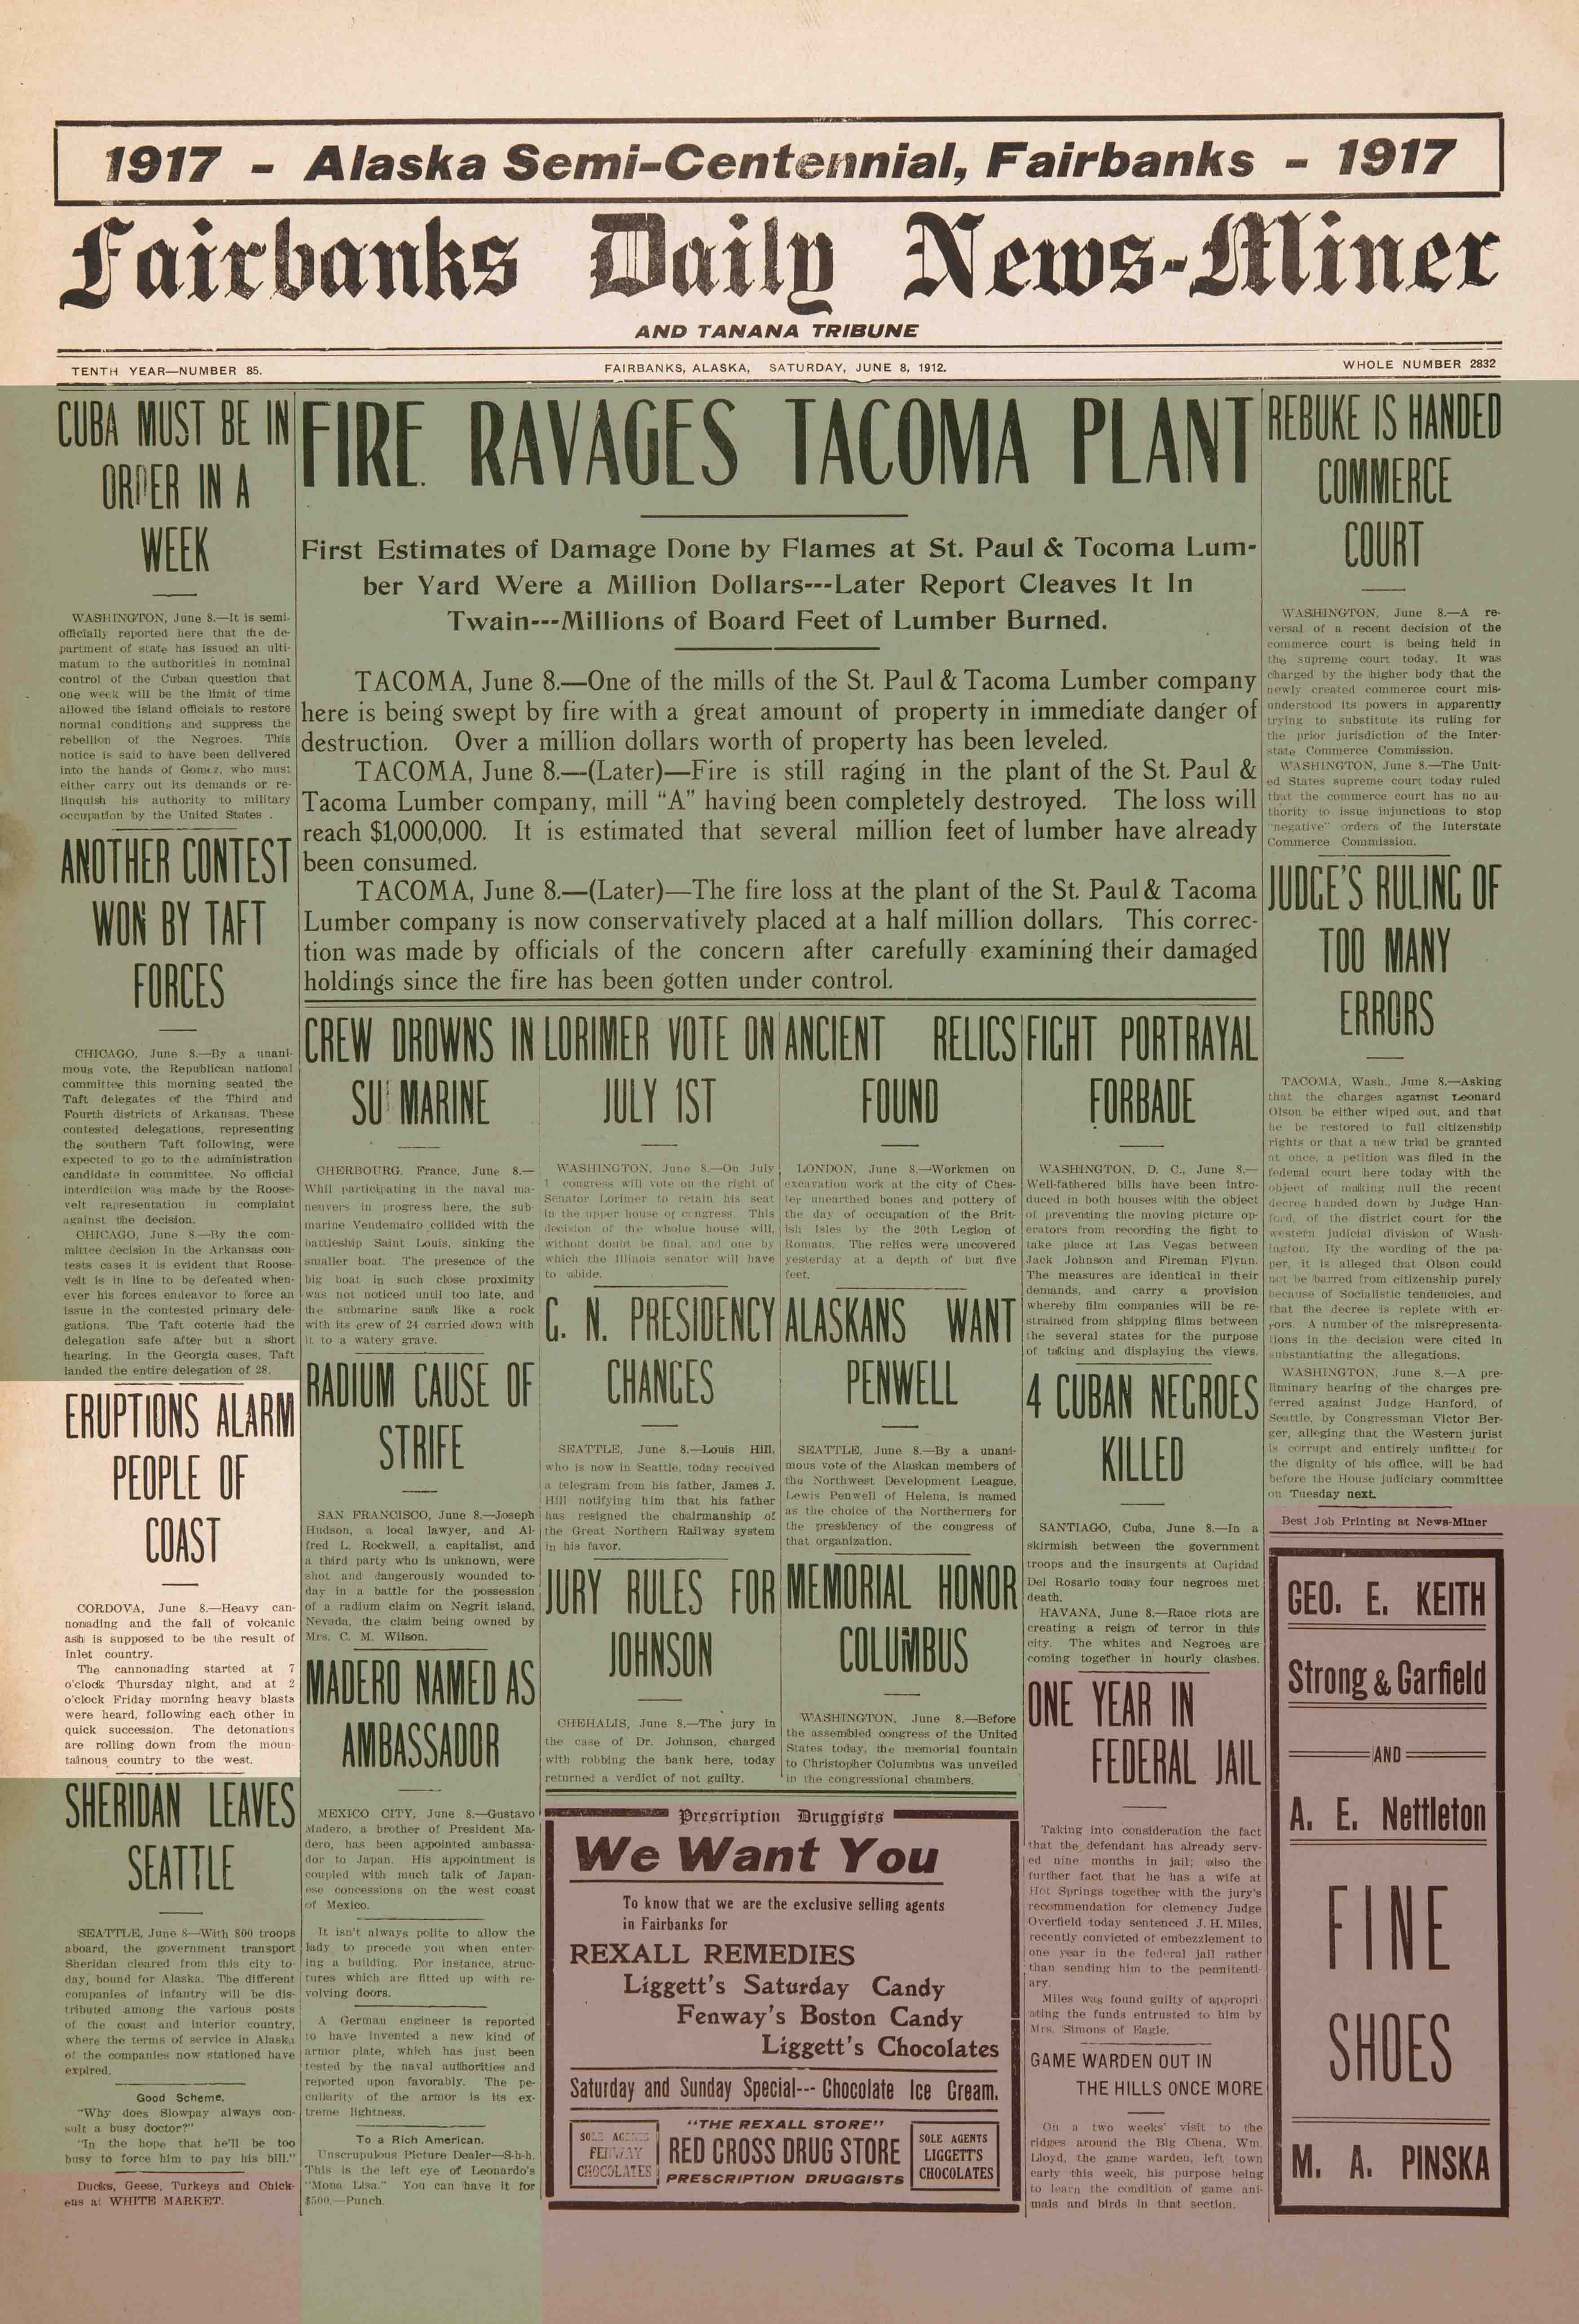 1912 June 8, Fairbanks Daily News-Miner (pg 1)